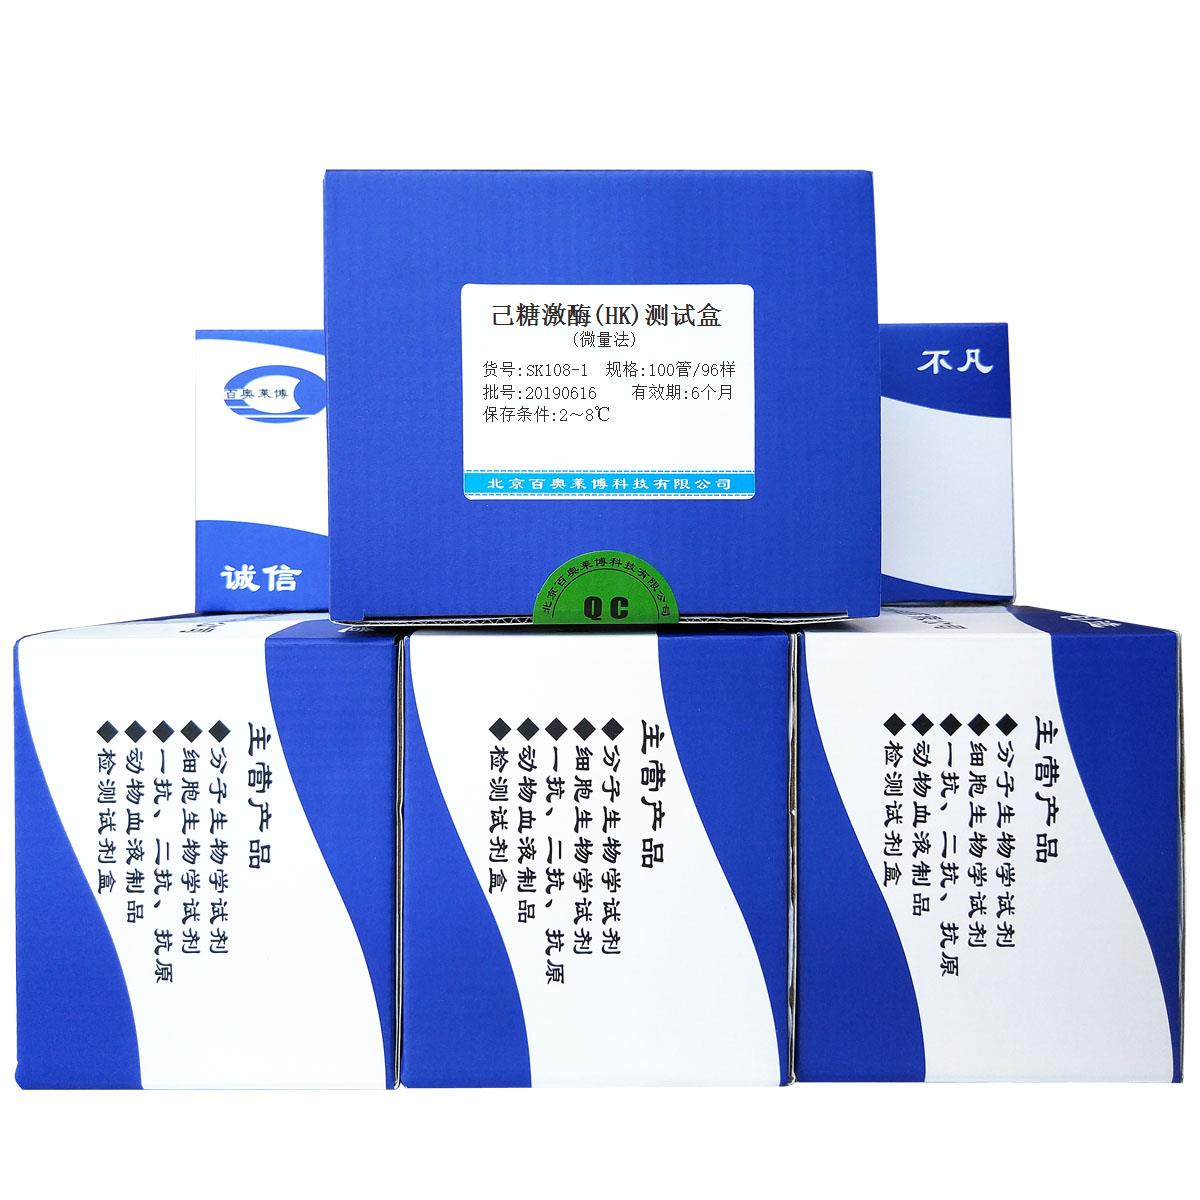 己糖激酶(HK)测试盒(微量法)北京品牌